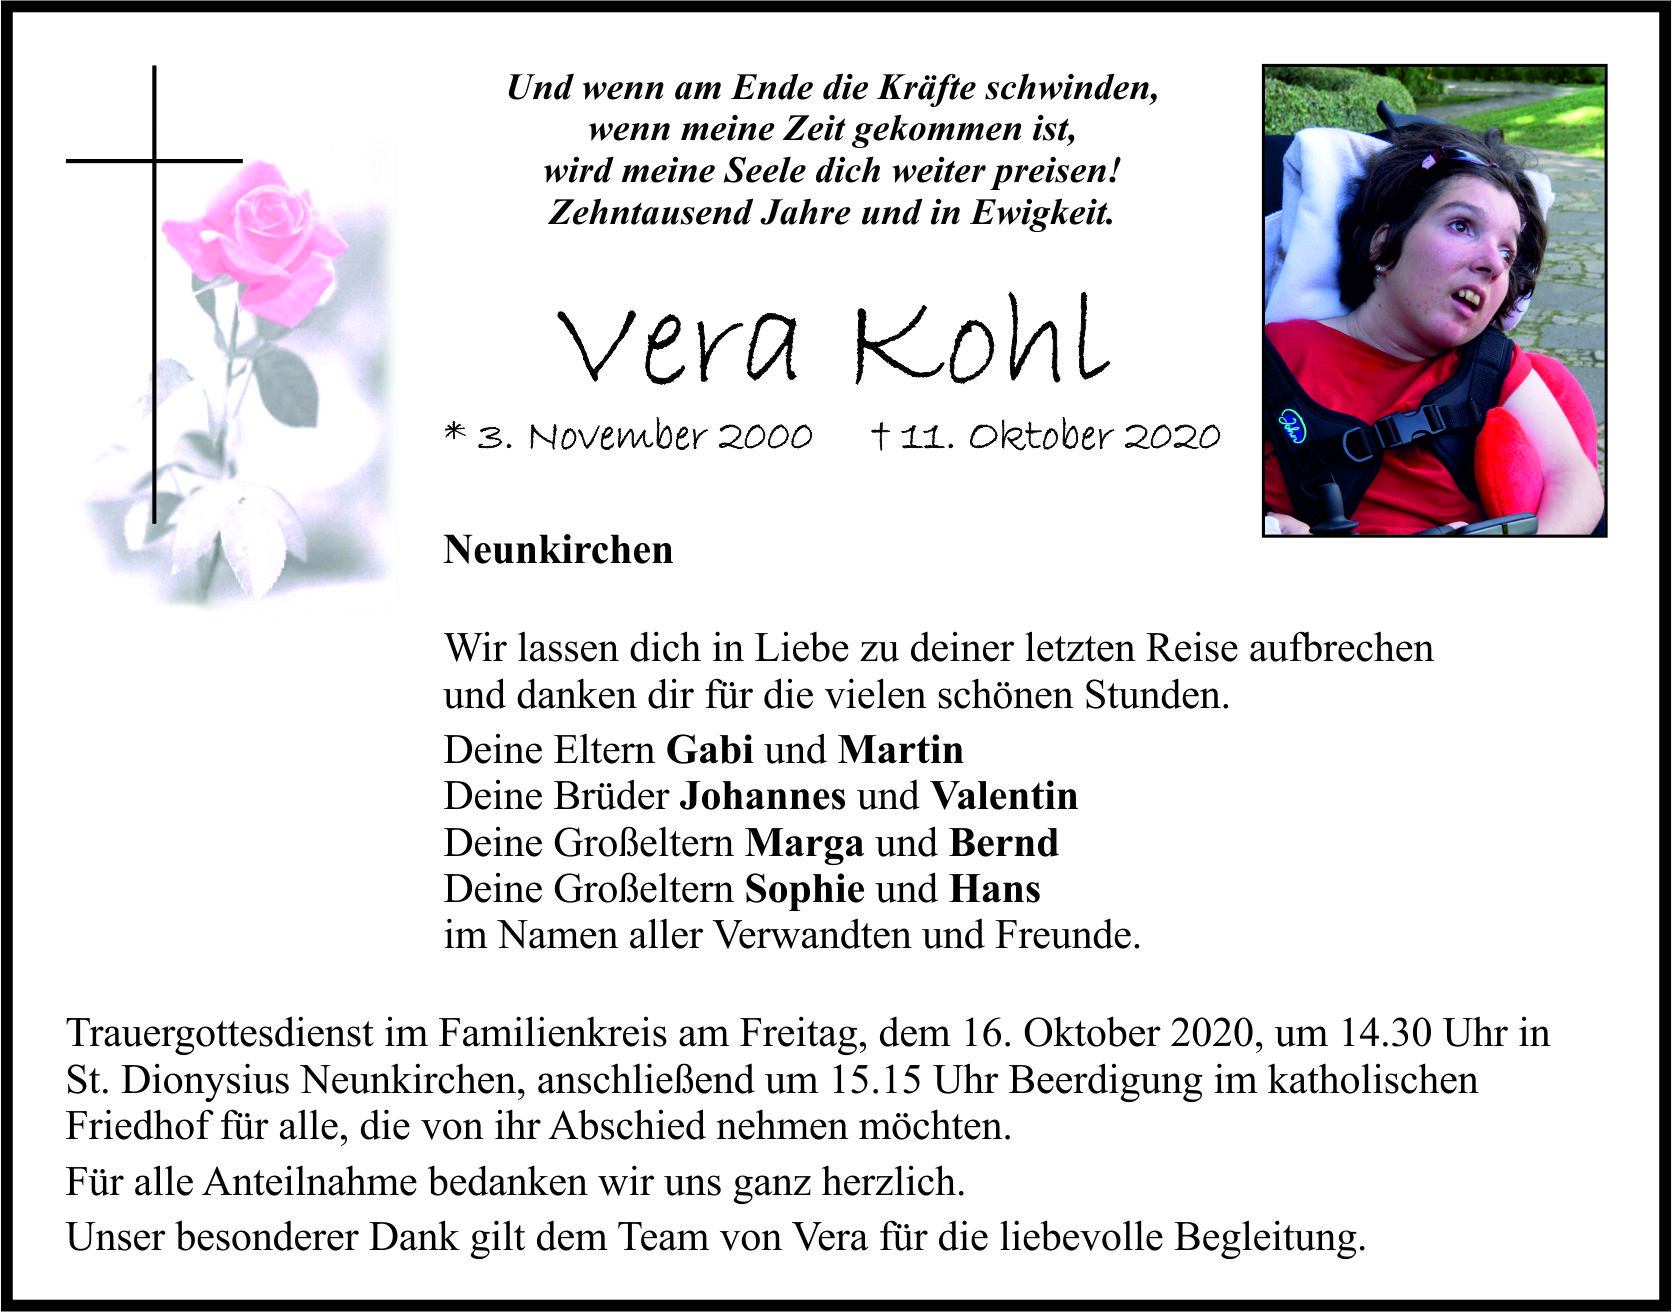 Traueranzeige Vera Kohl, Neunkirchen